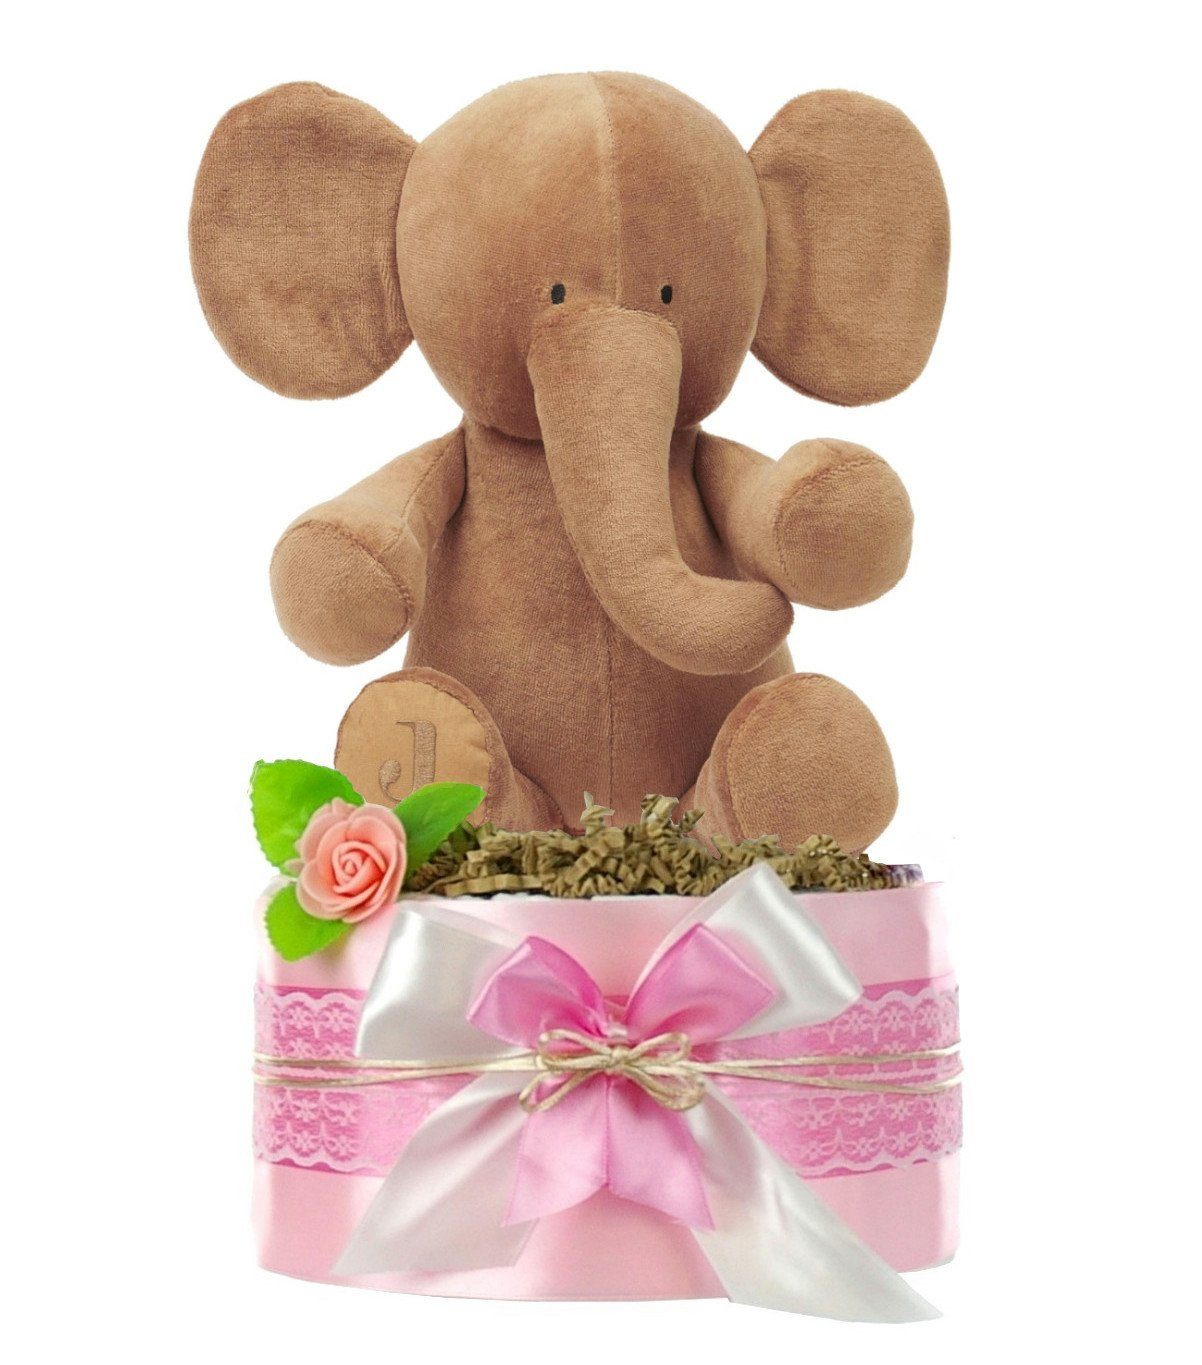 dubistda-WINDELTORTEN- Neugeborenen-Geschenkset Windeltorte Mädchen LITTLE PEANUT + kuscheliger Elefant, Babyparty | Erstausstattungspakete